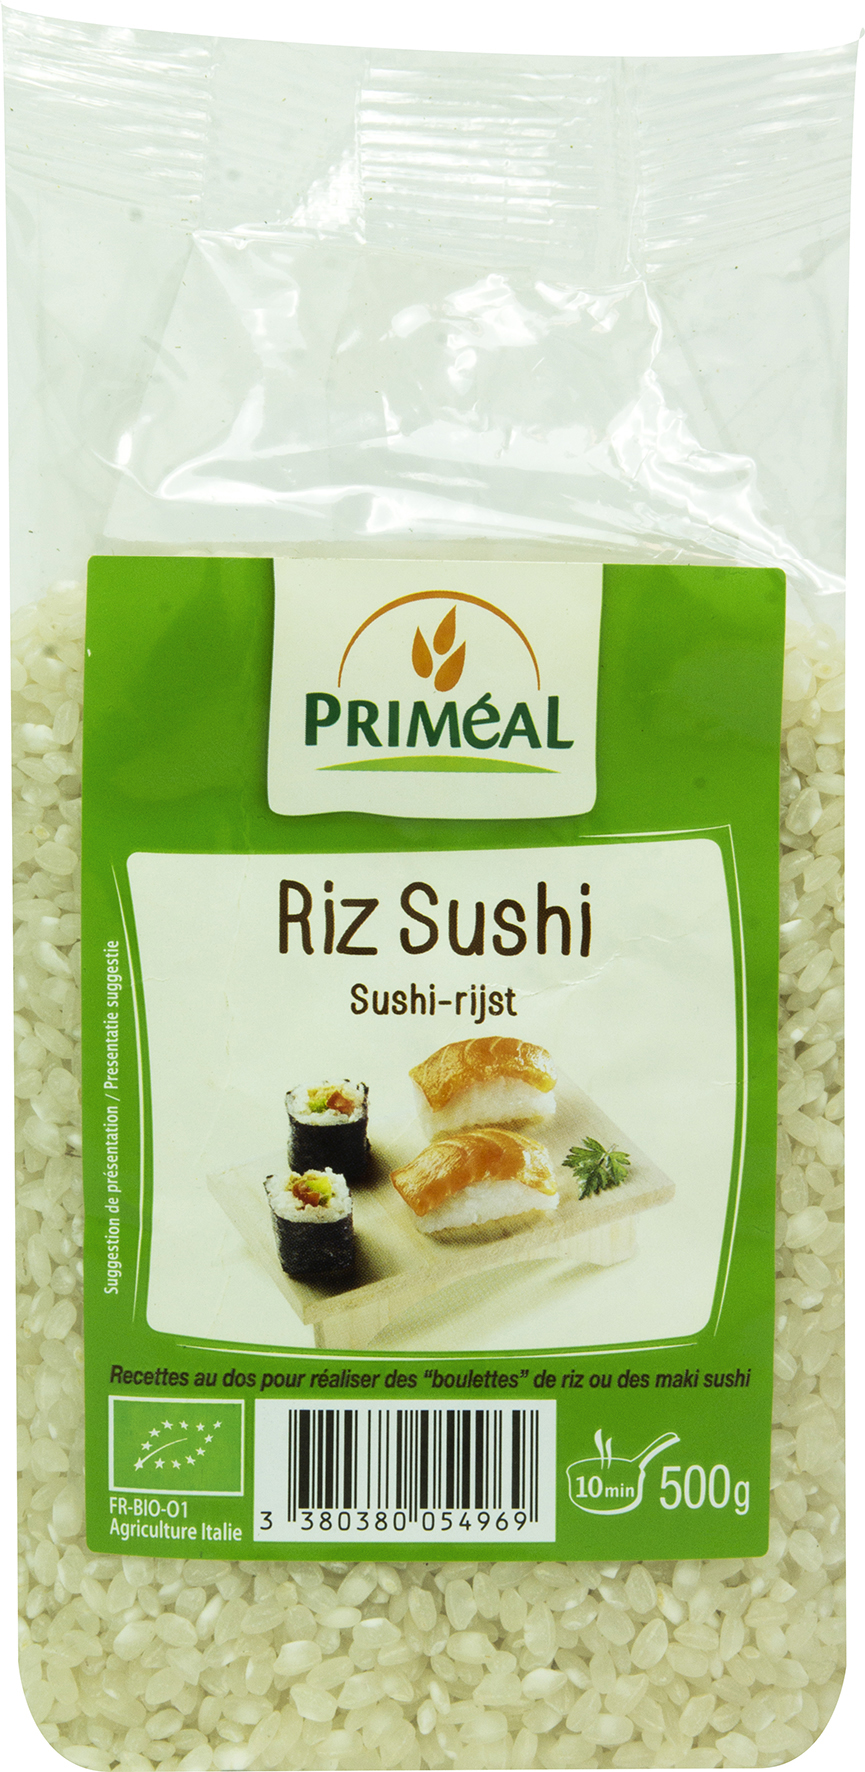 Riz sushi - 500g, Priméal